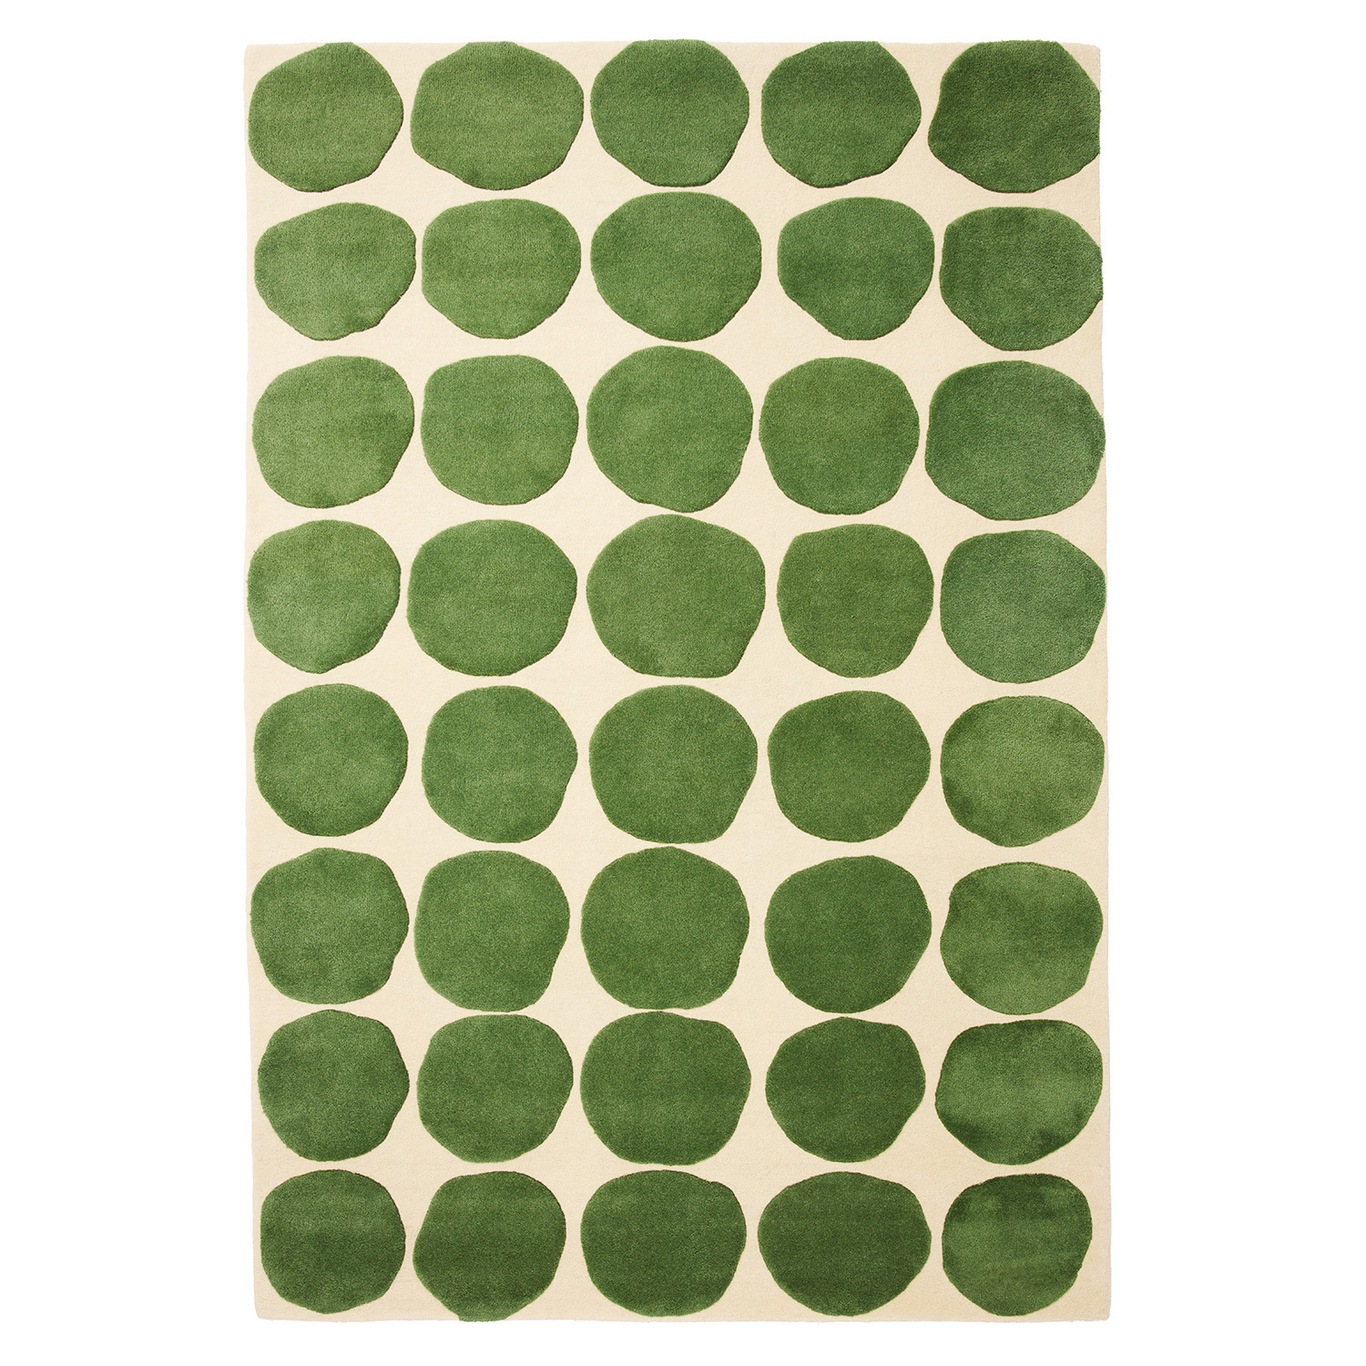 Dots 2 Level Tæppe Light Khaki / Cactus Green, 230x320_cm cm